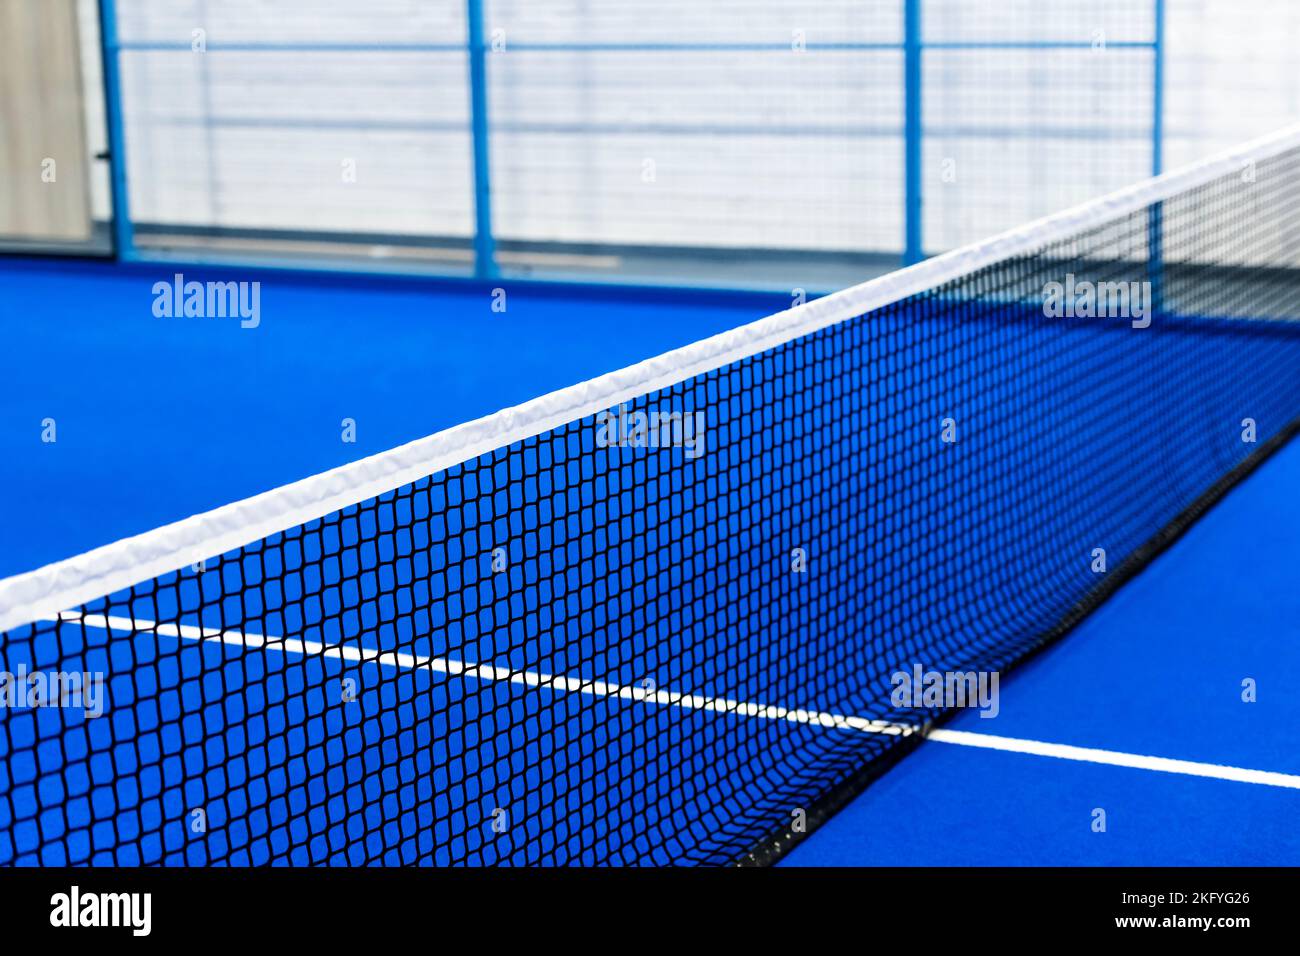 Paddeltennis und Tennisnetz auf dem Blue Court. Tenniskonzept. Horizontales Sportposter, Grußkarten, Header, Website Stockfoto